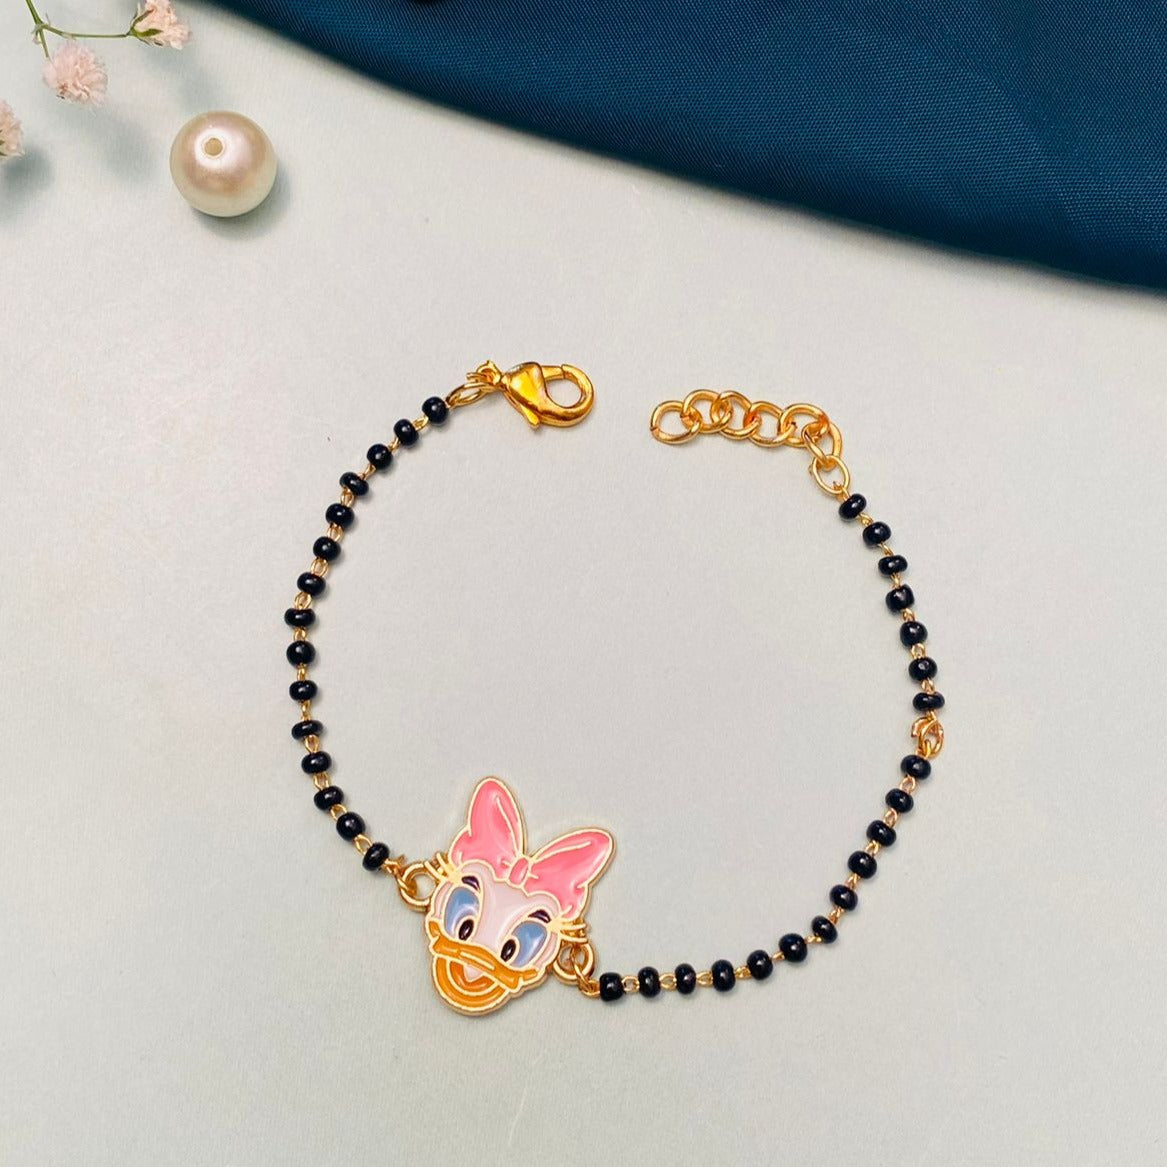 Stunning Daisy Duck Inspired Kids Hand Bracelet